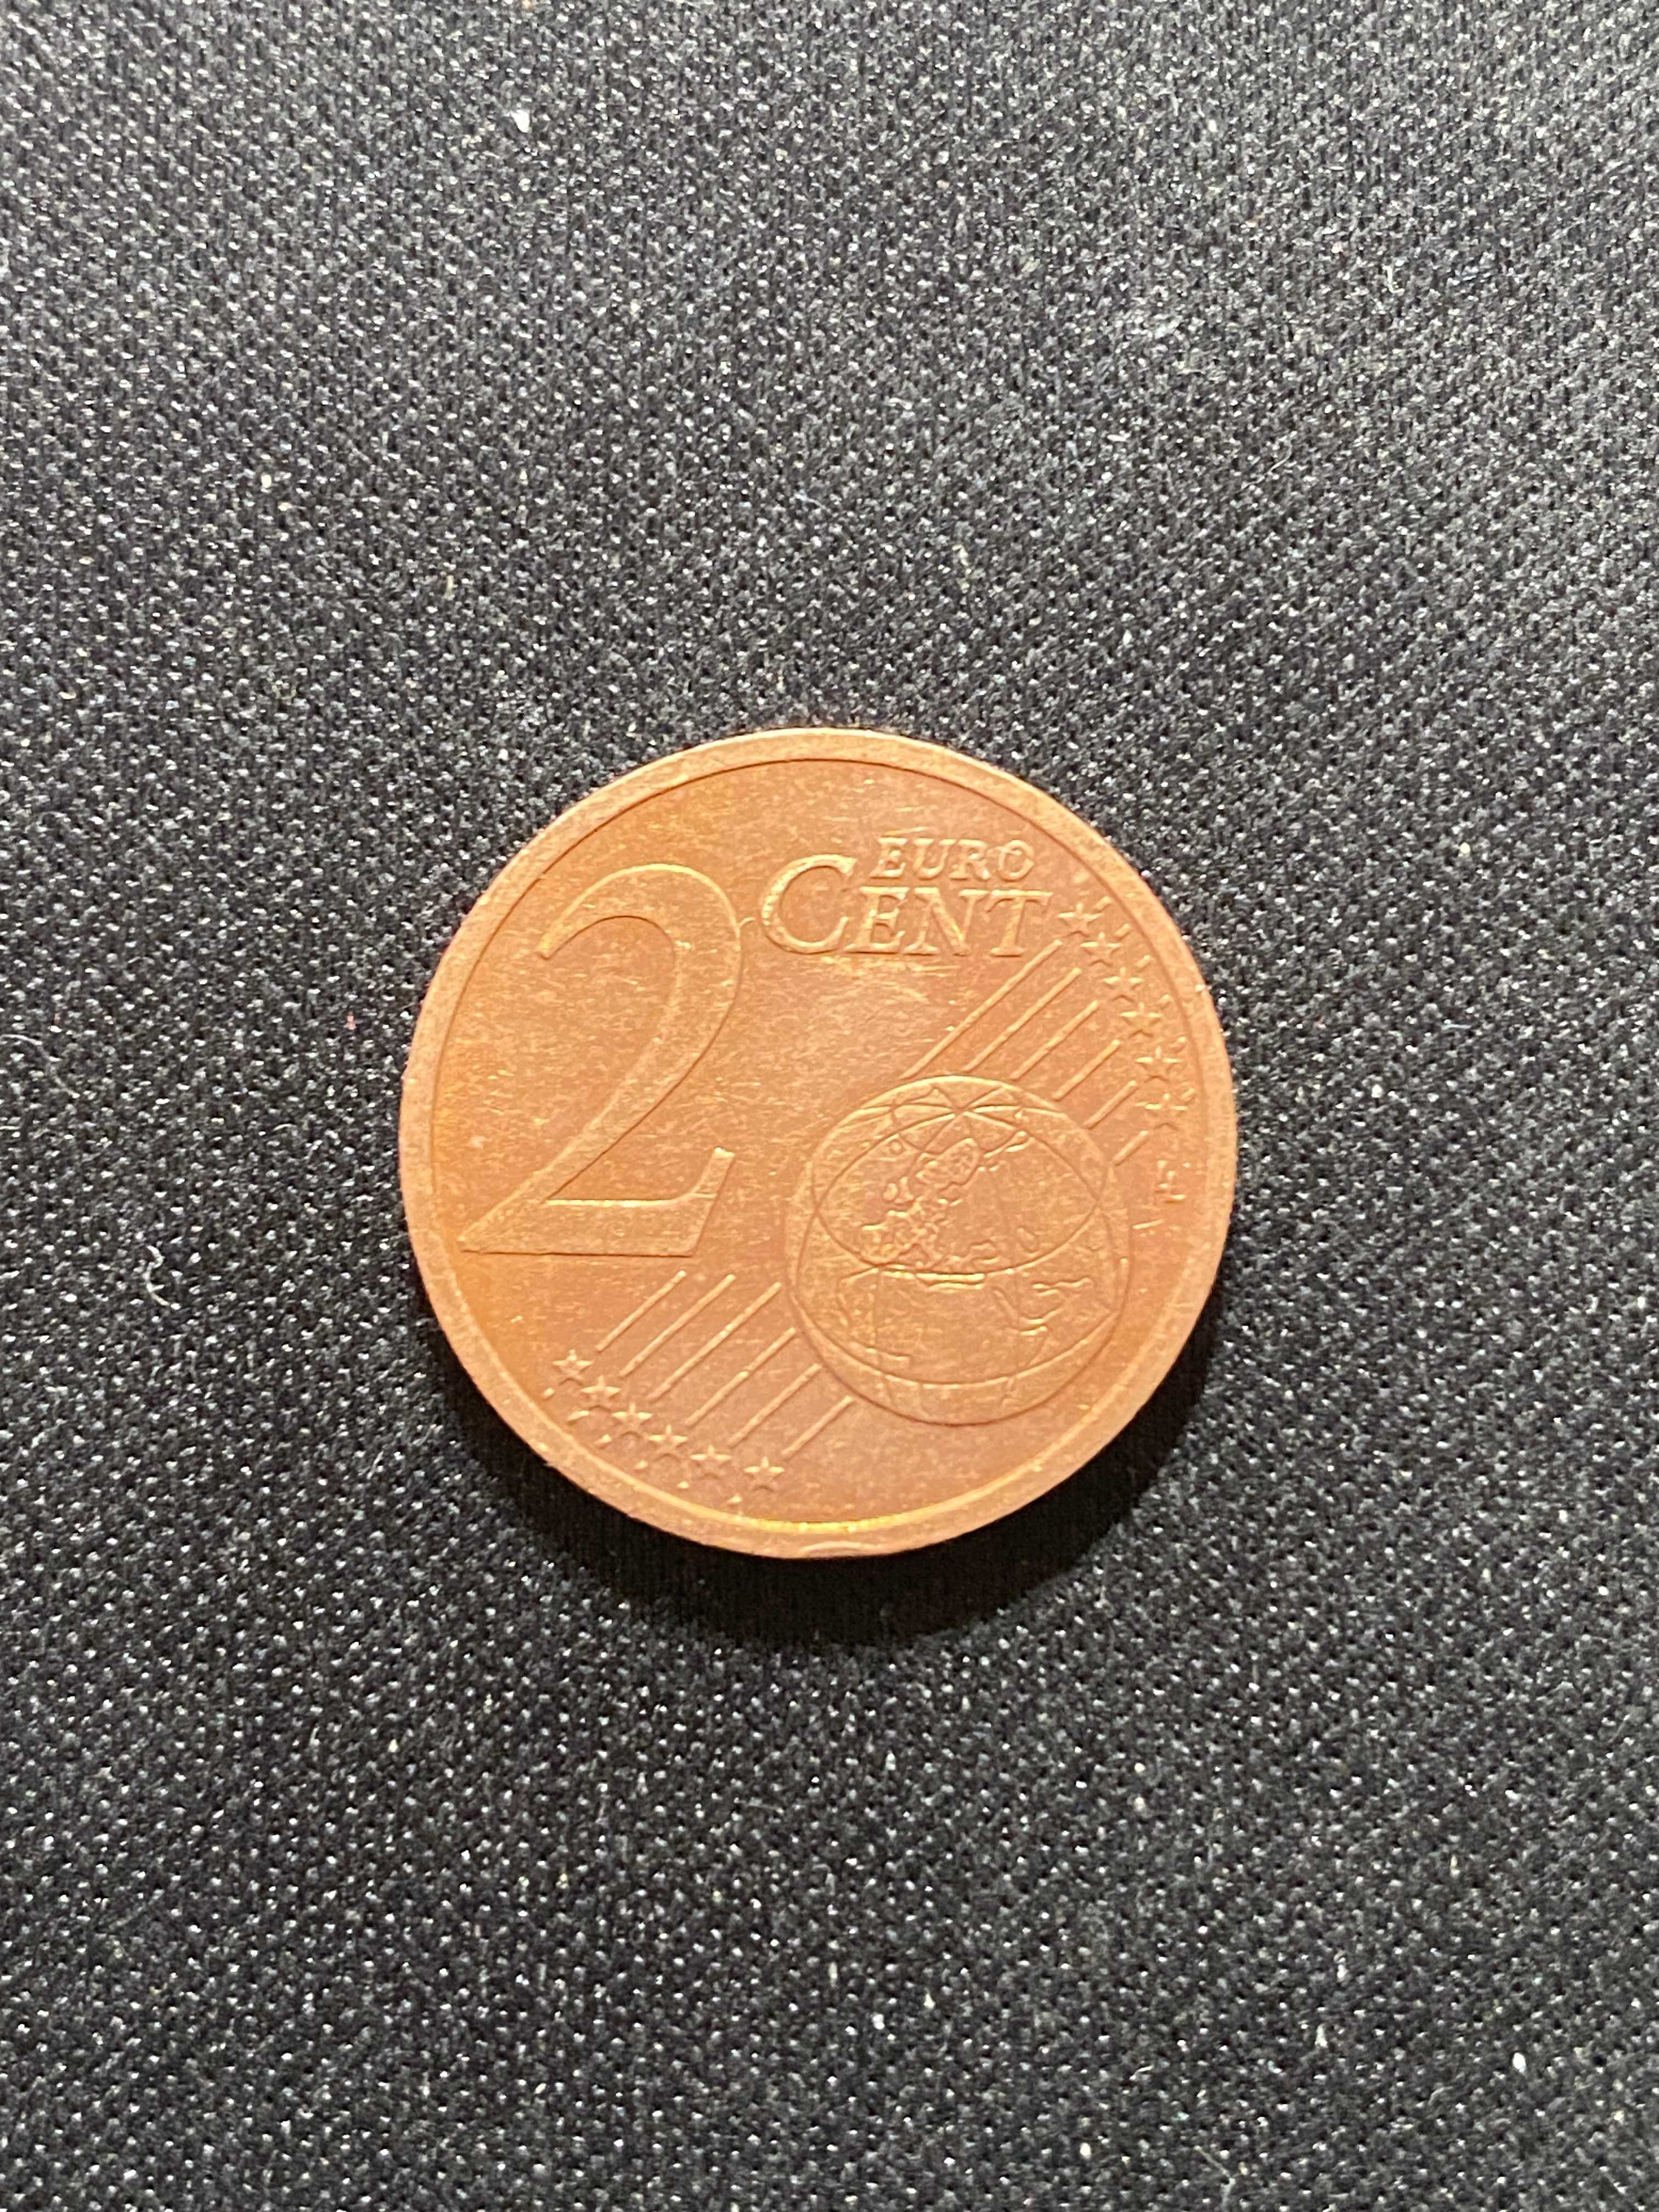 Moneta Słowacja - 2 eurocenty 2010r / 2016r